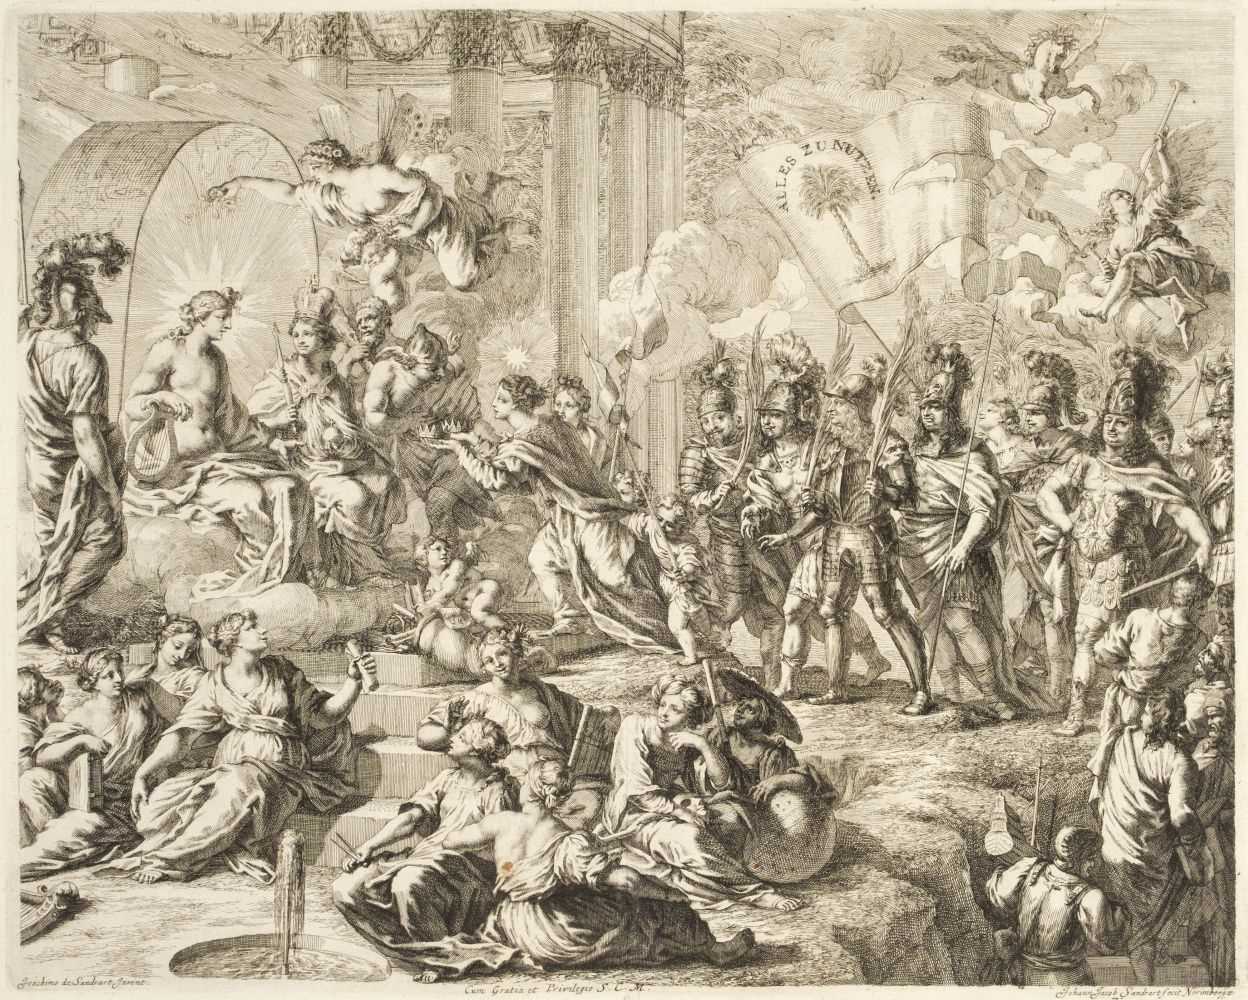 Lot 268 - Sandrart (Joachim von). Iconologia Deorum, 1680